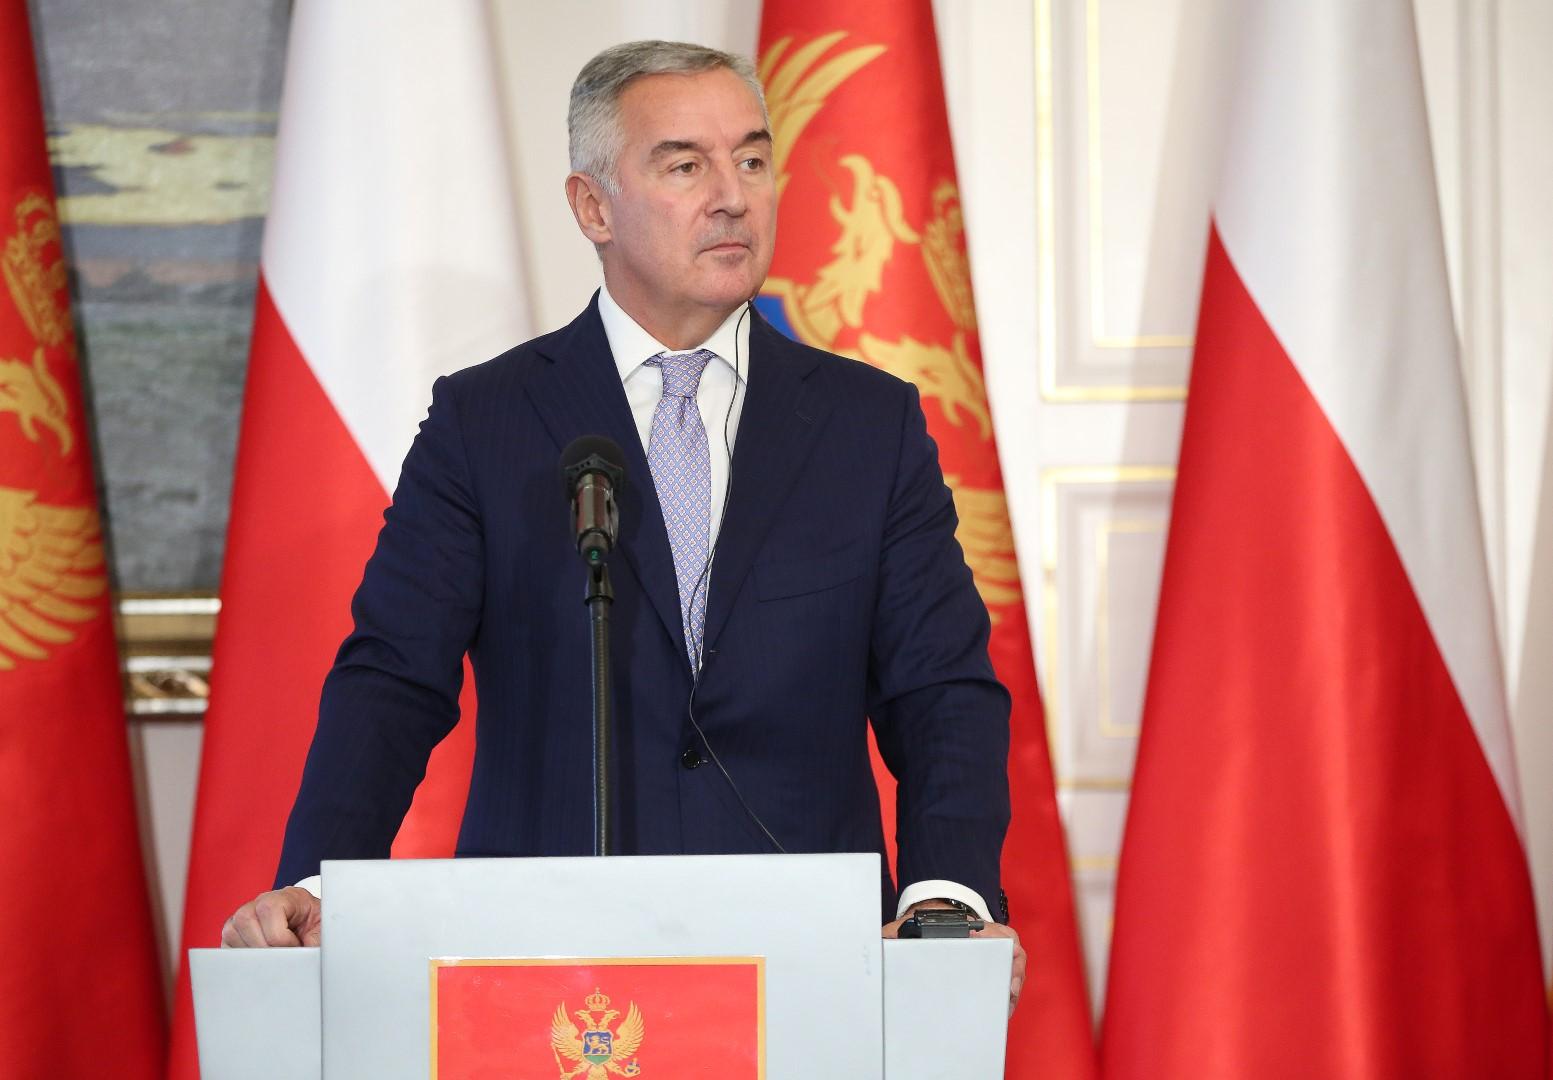 Đukanović: EU i NATO treba da budu aktivniji u našem regionu